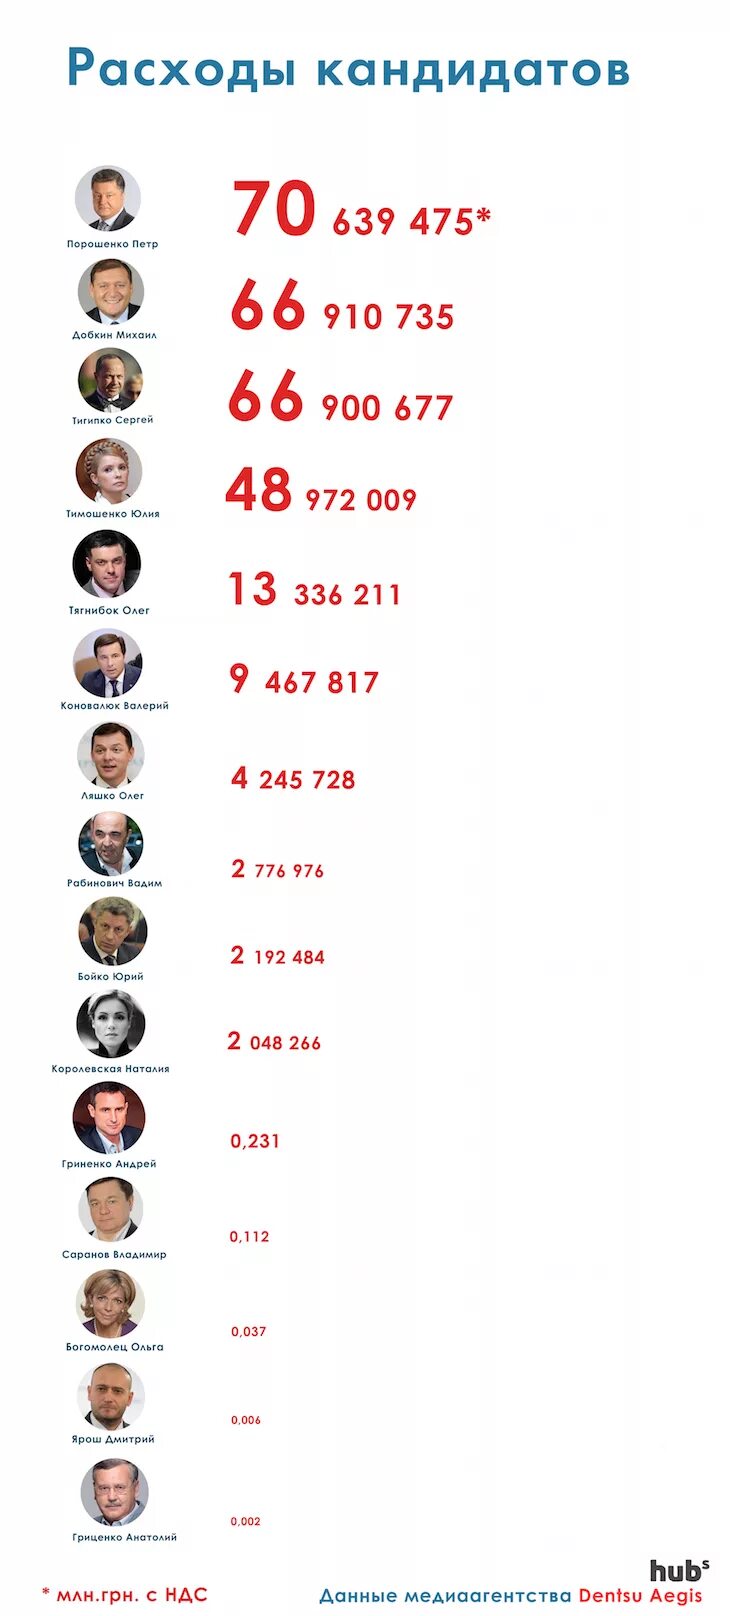 Выборы президента Украины 2014 кандидаты.